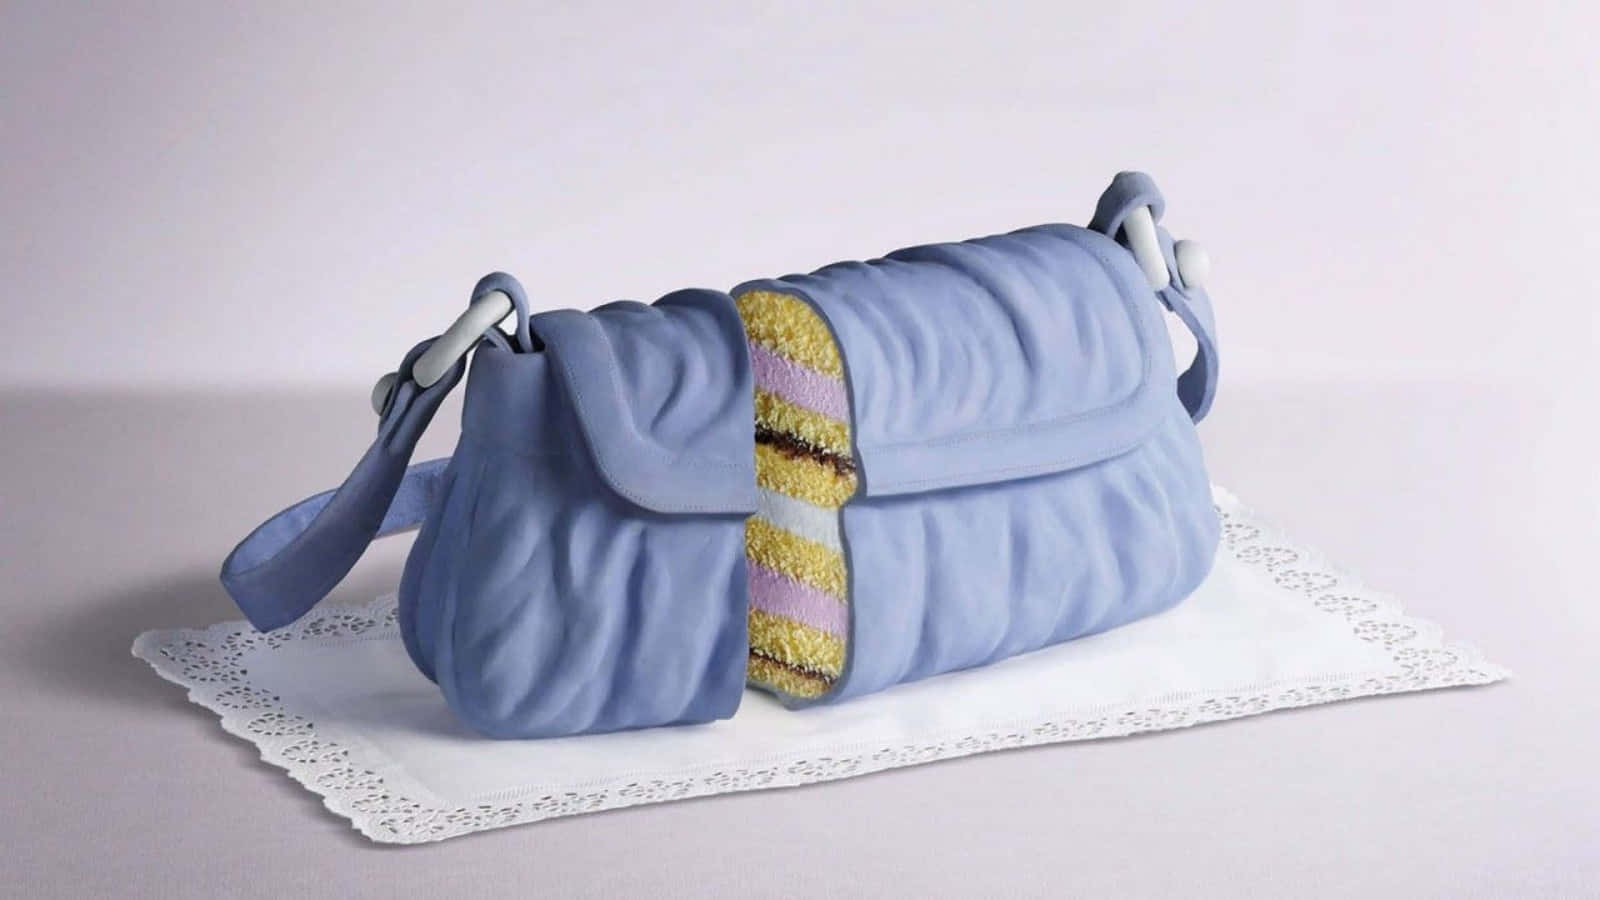 Enblå Handväska Tårta På En Vit Duksduk